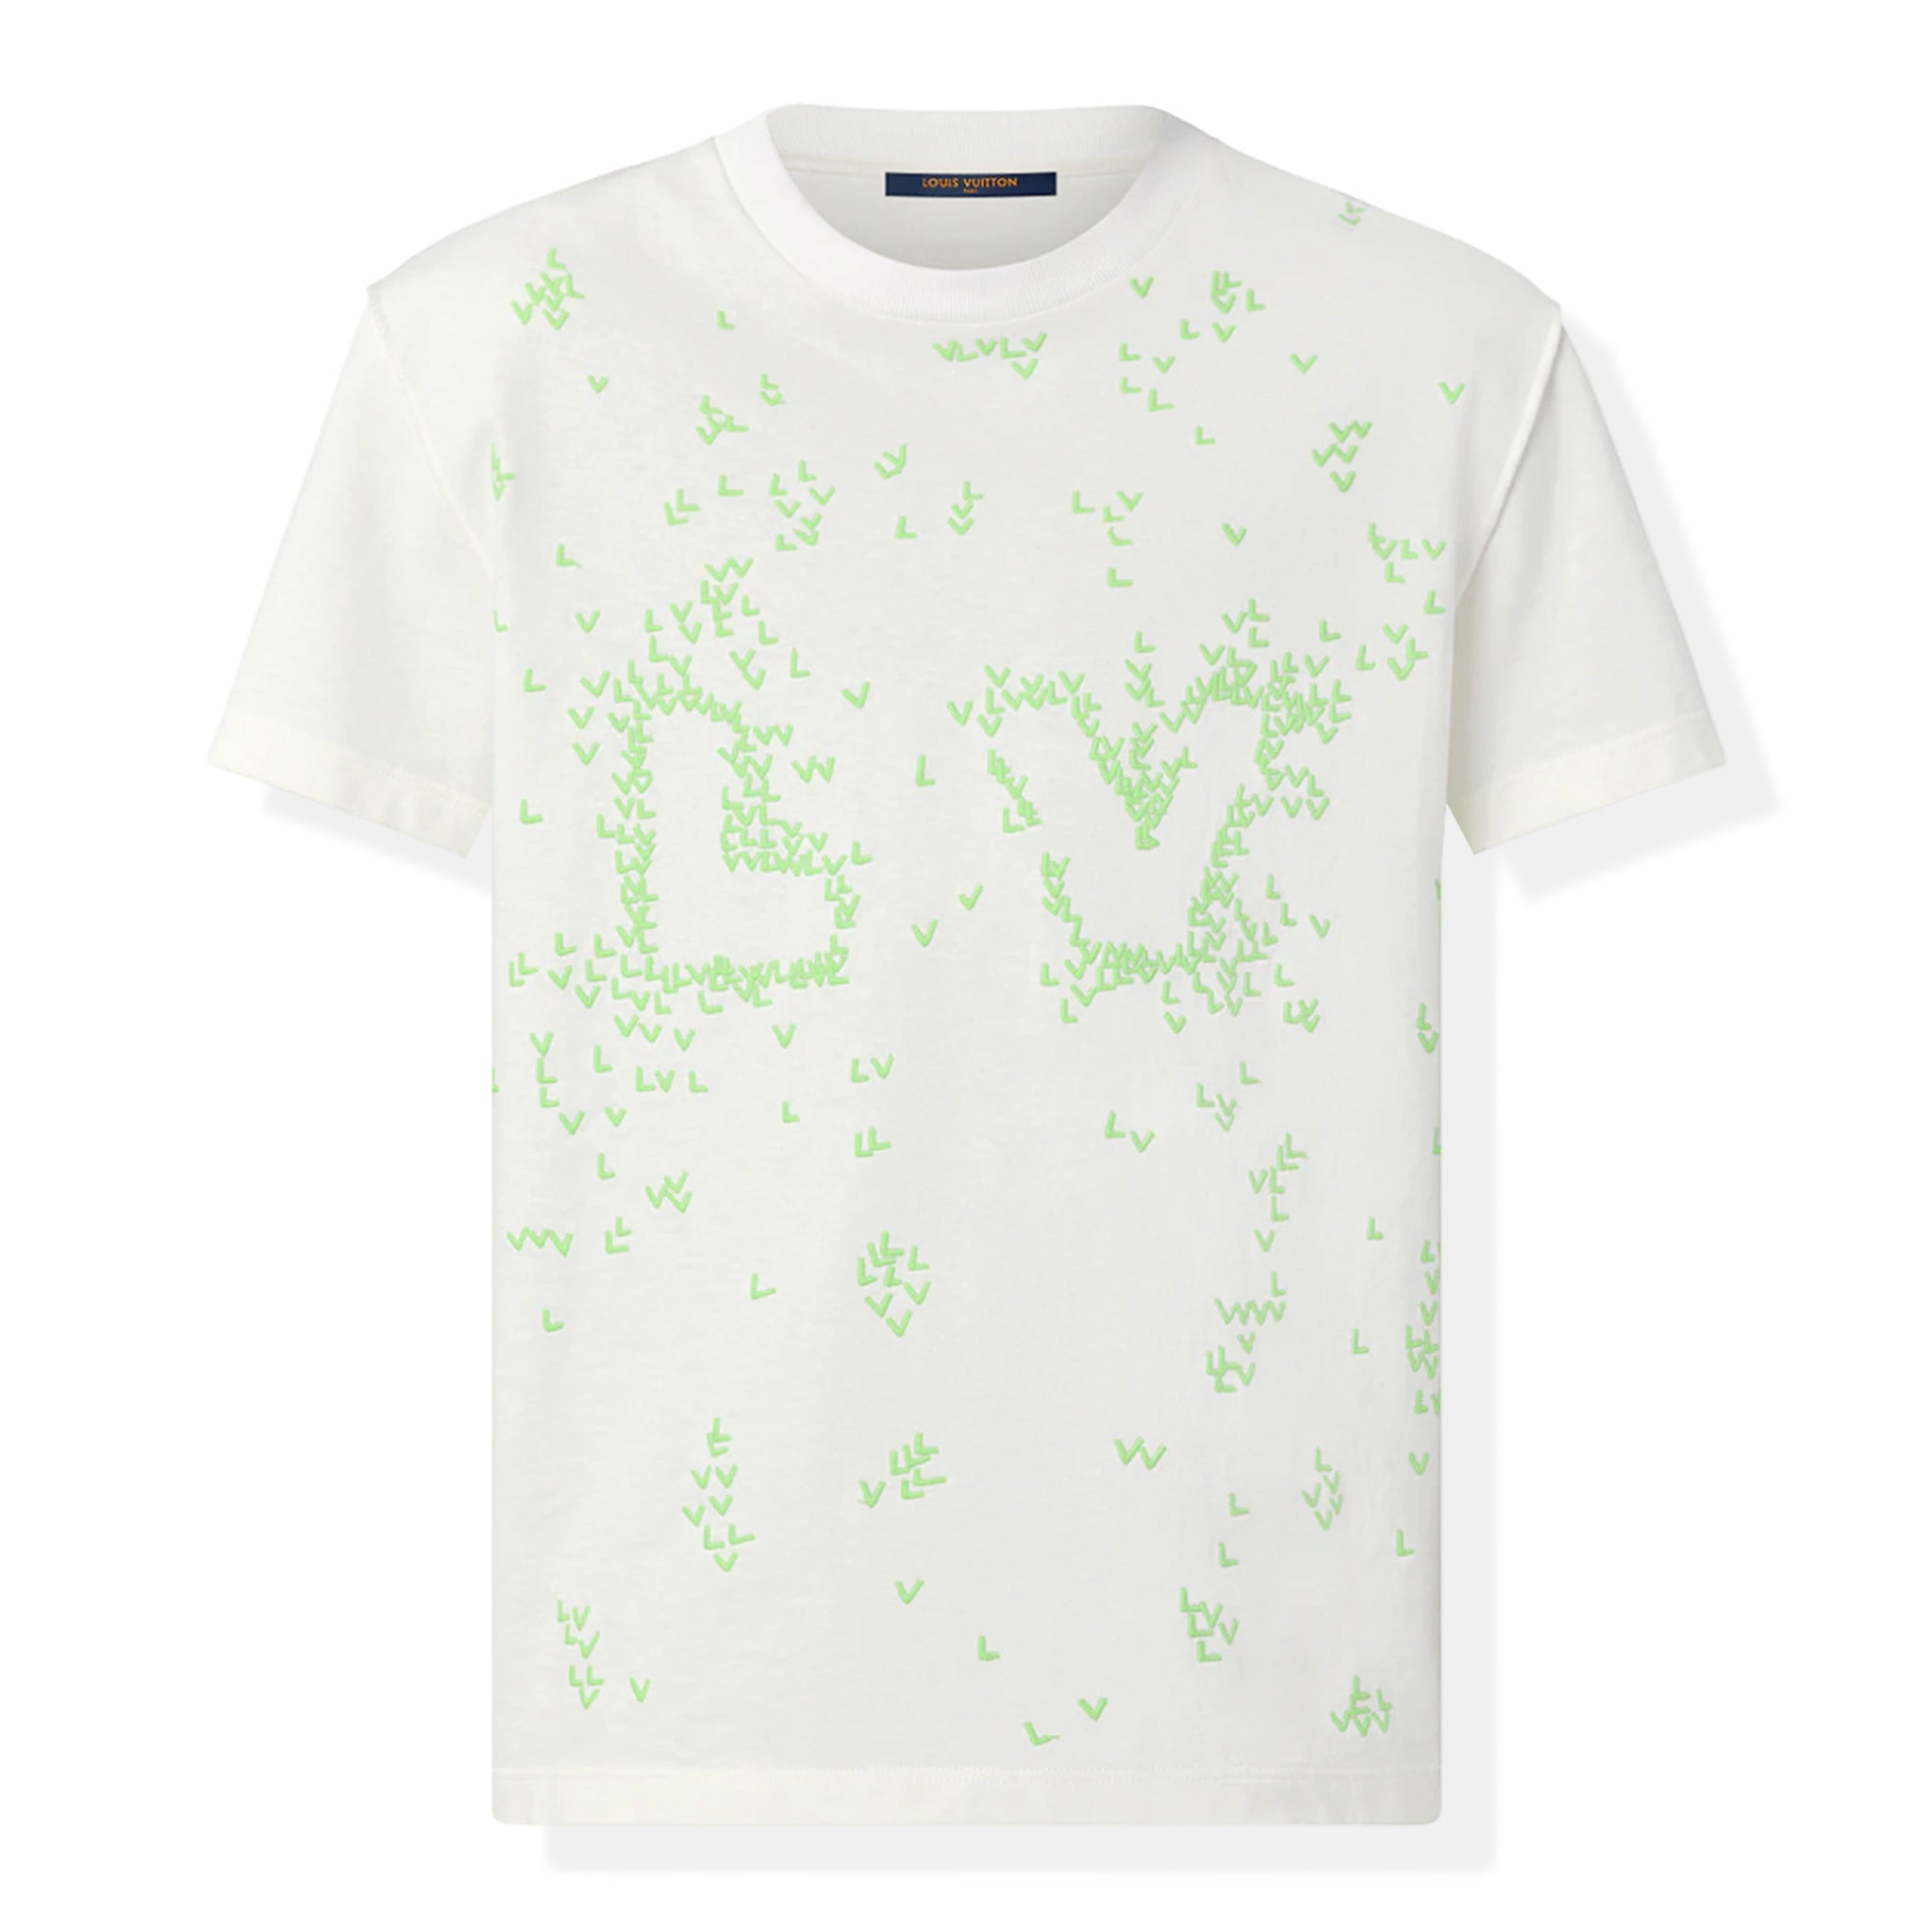 Louis Vuitton Black Lvse Monogram Gradient T-shirt UK M